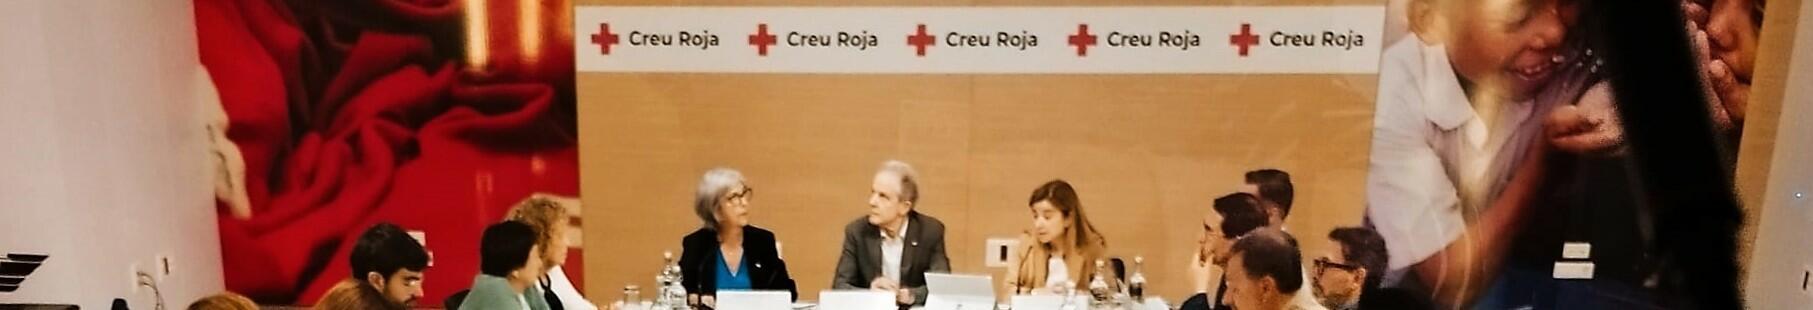 Creu Roja augmenta l’atenció de persones en situació d’extrema vulnerabilitat